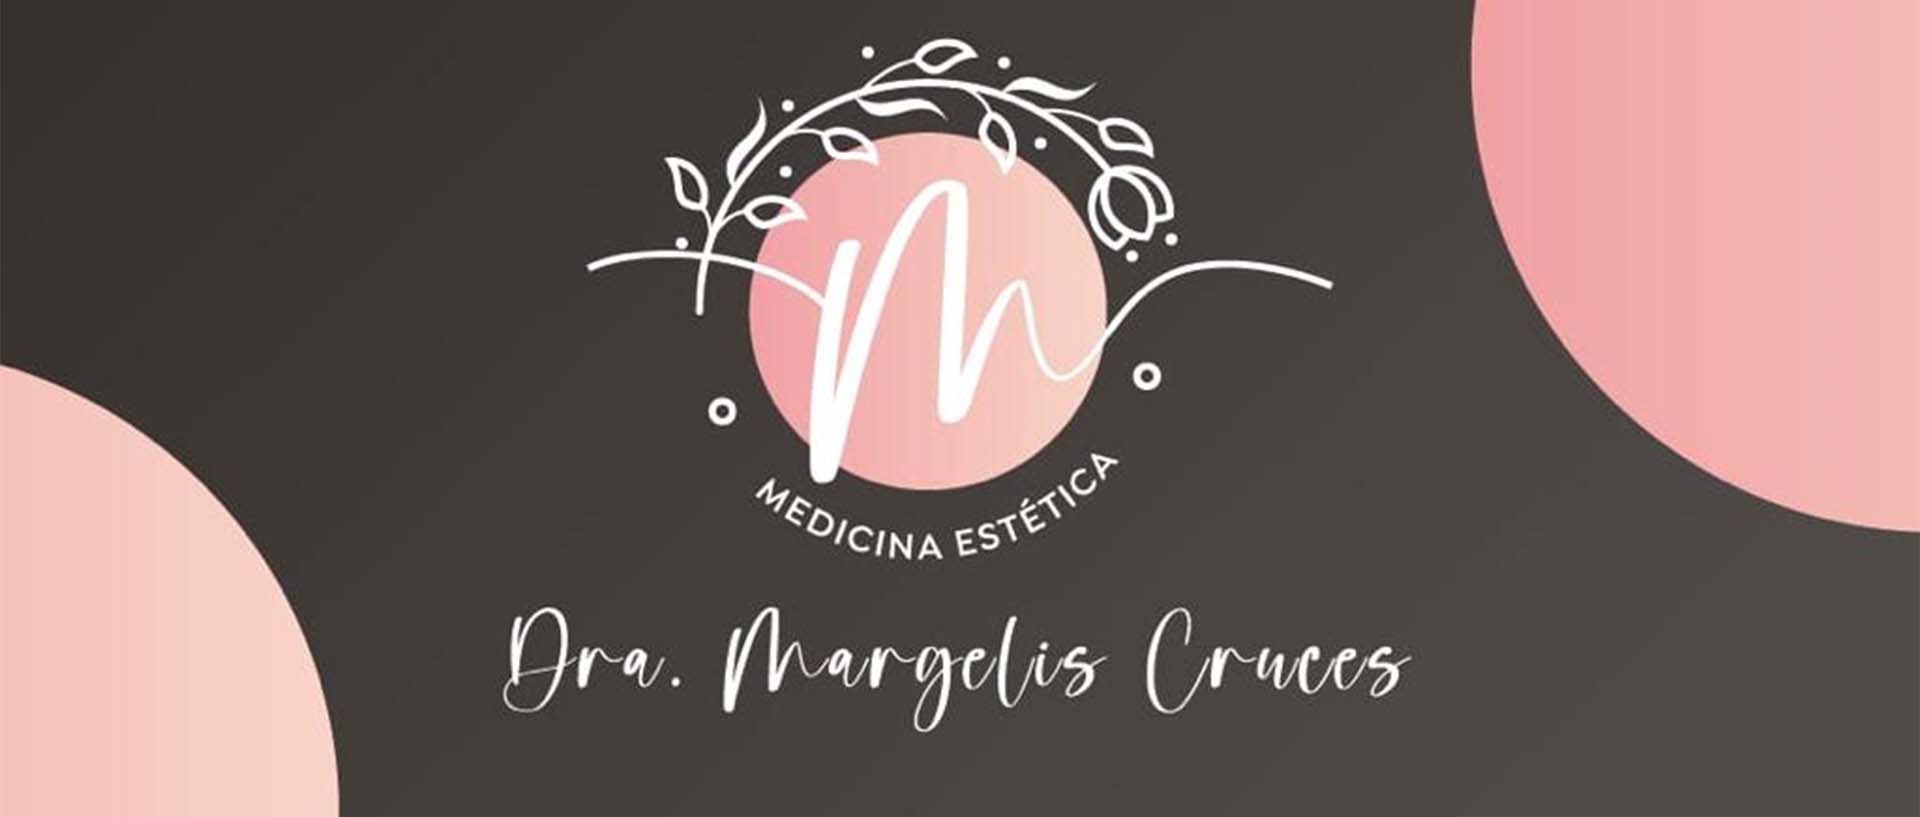 Medicina estetica en Miranda de Ebro